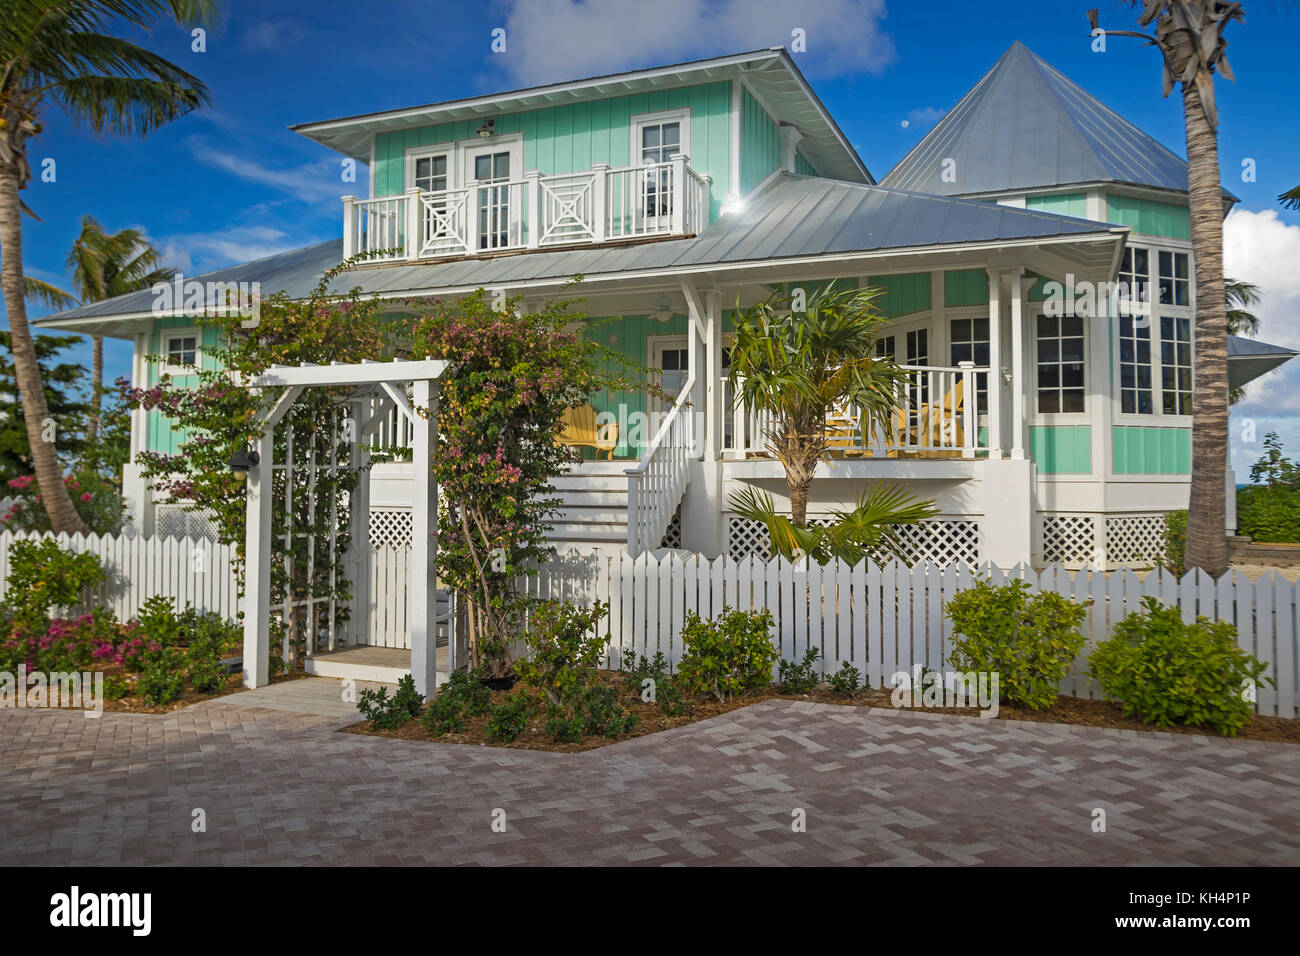 Bahamian Island House Stock Photo